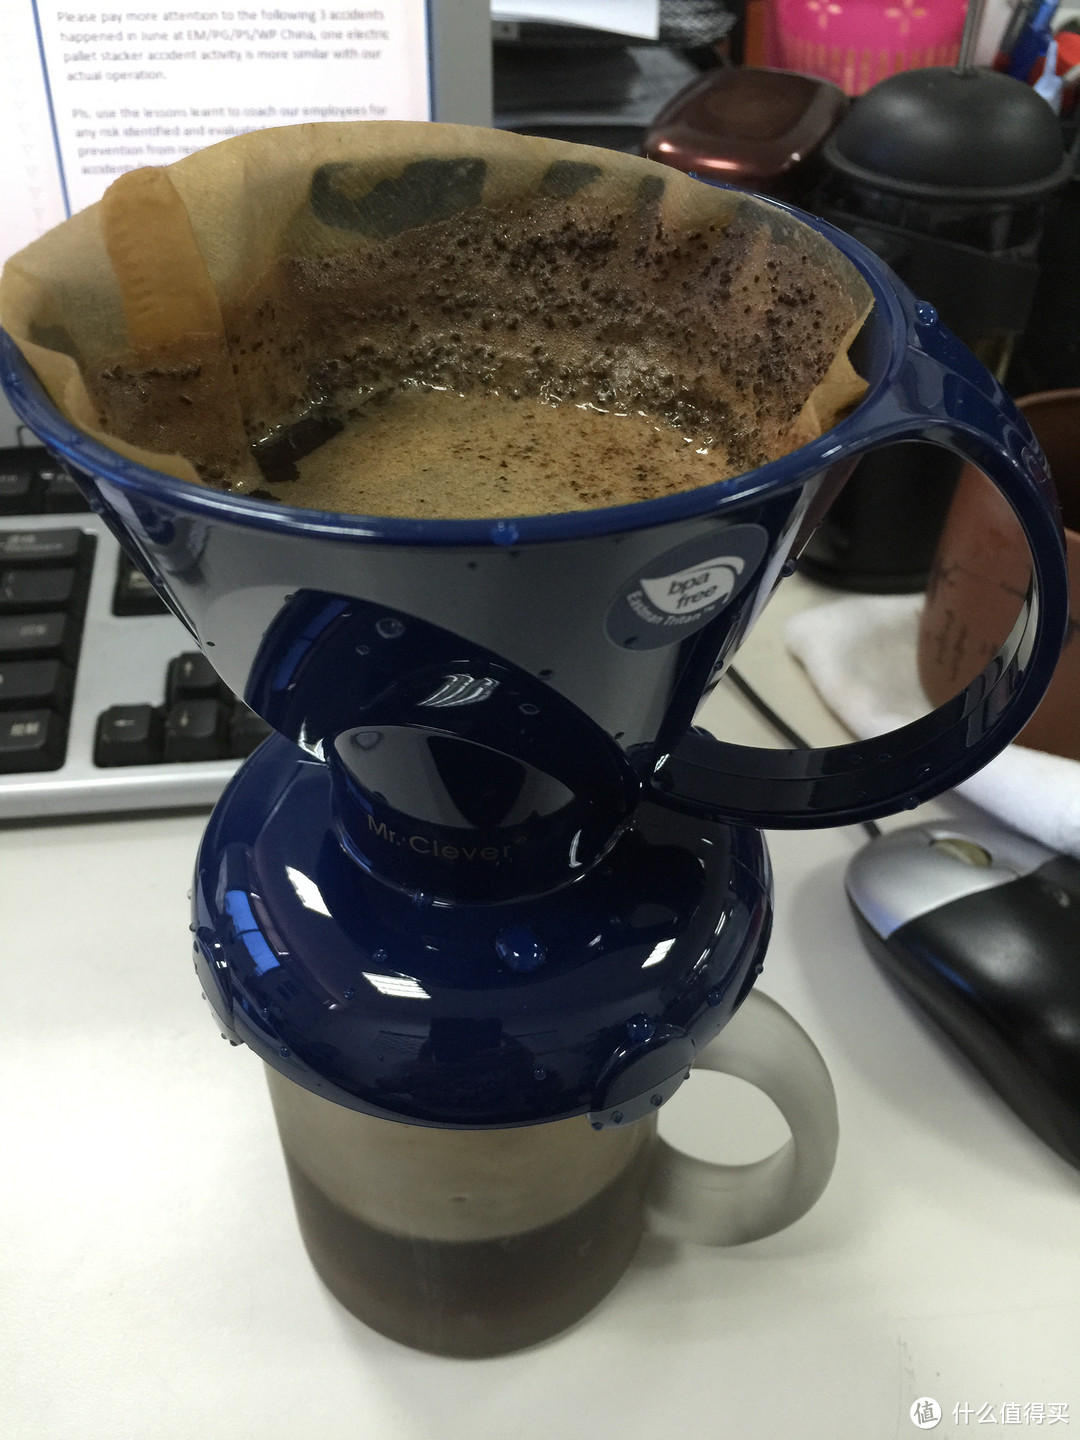 懒人喝咖啡必备的神器——聪明杯